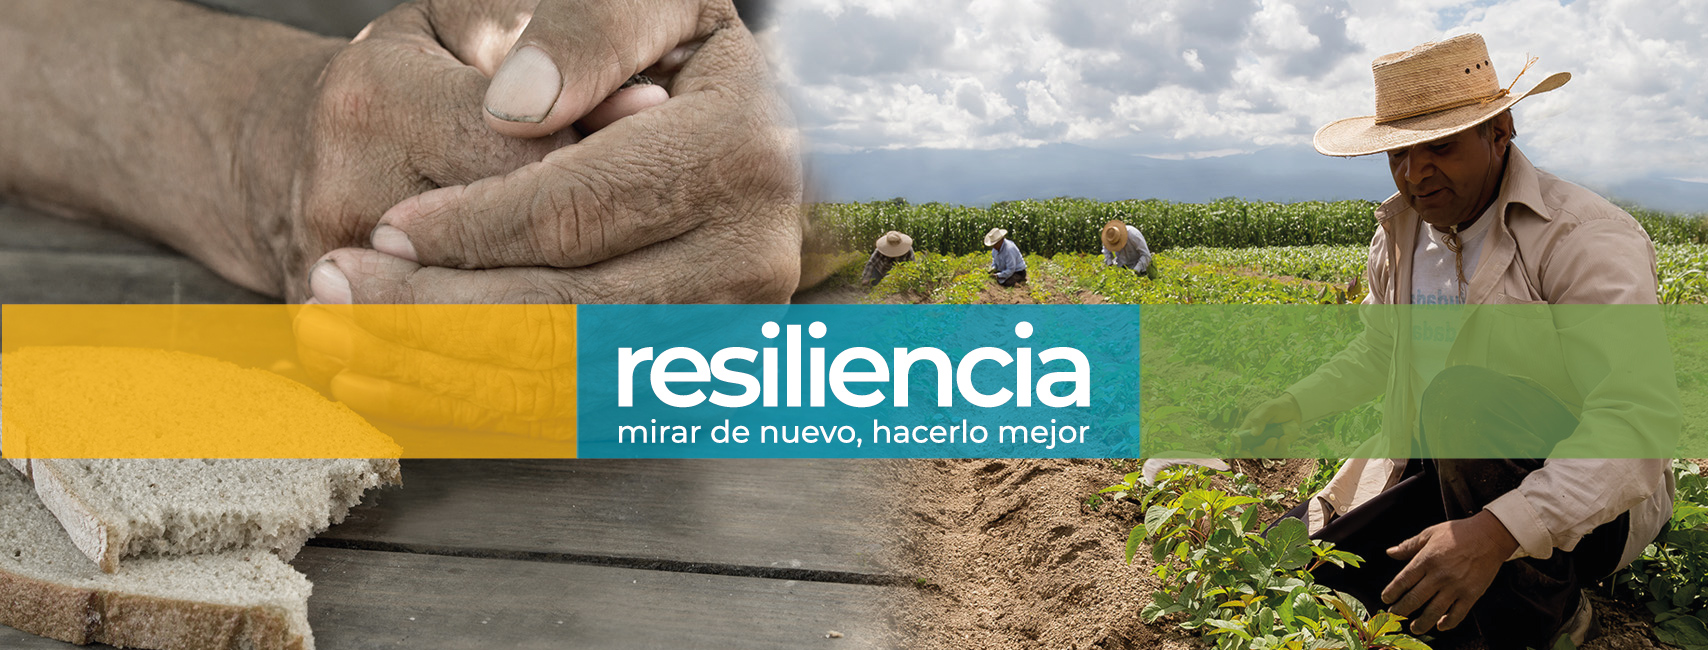 Resiliencia: Mirar de nuevo, hacerlo mejor